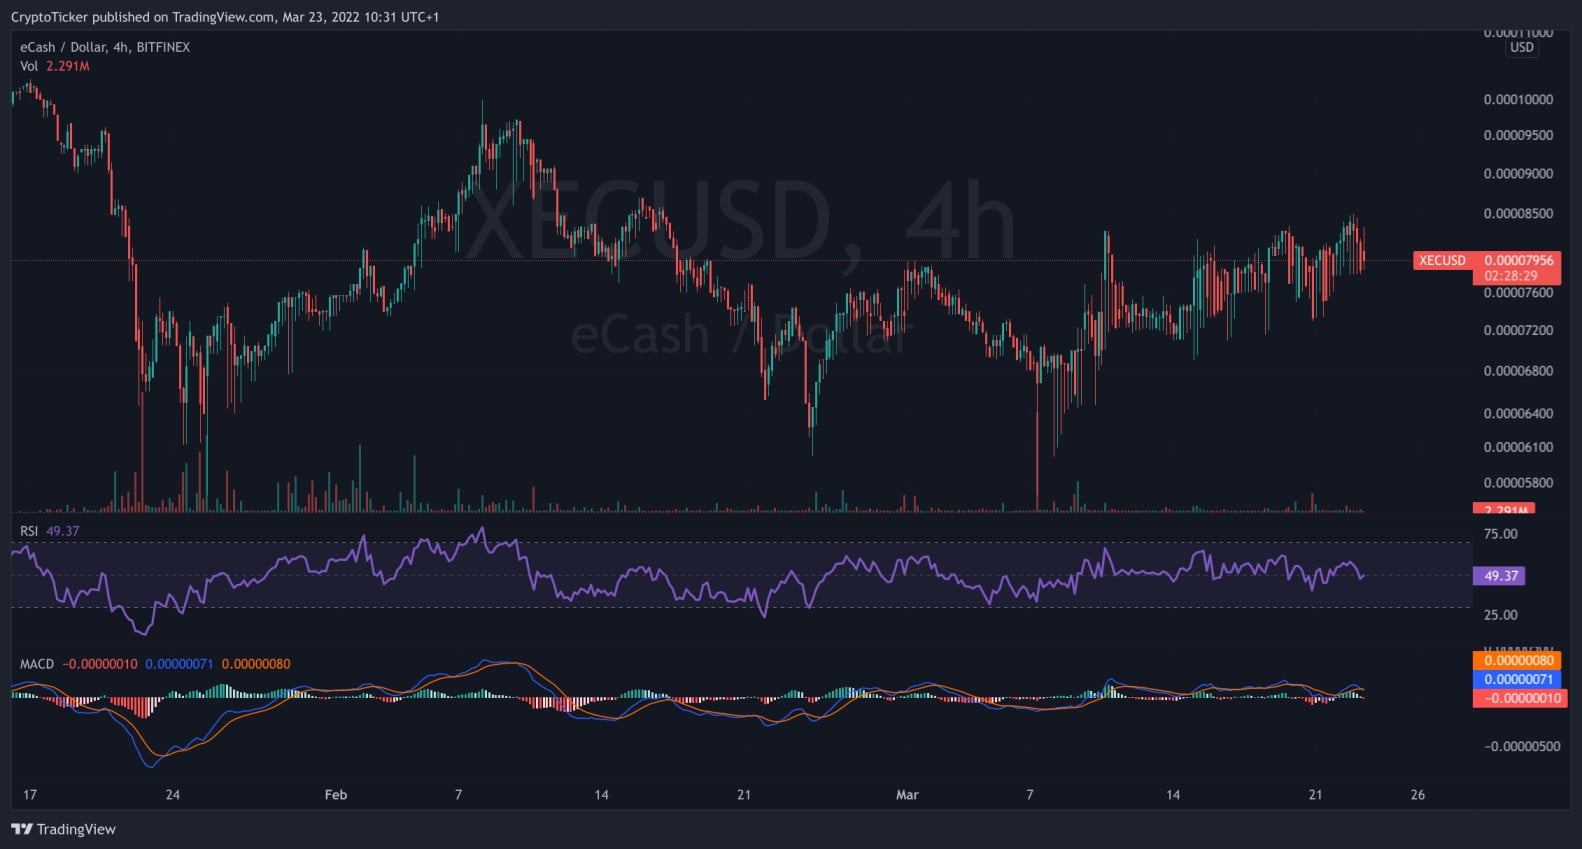 XEC/USD Chart on TradingView